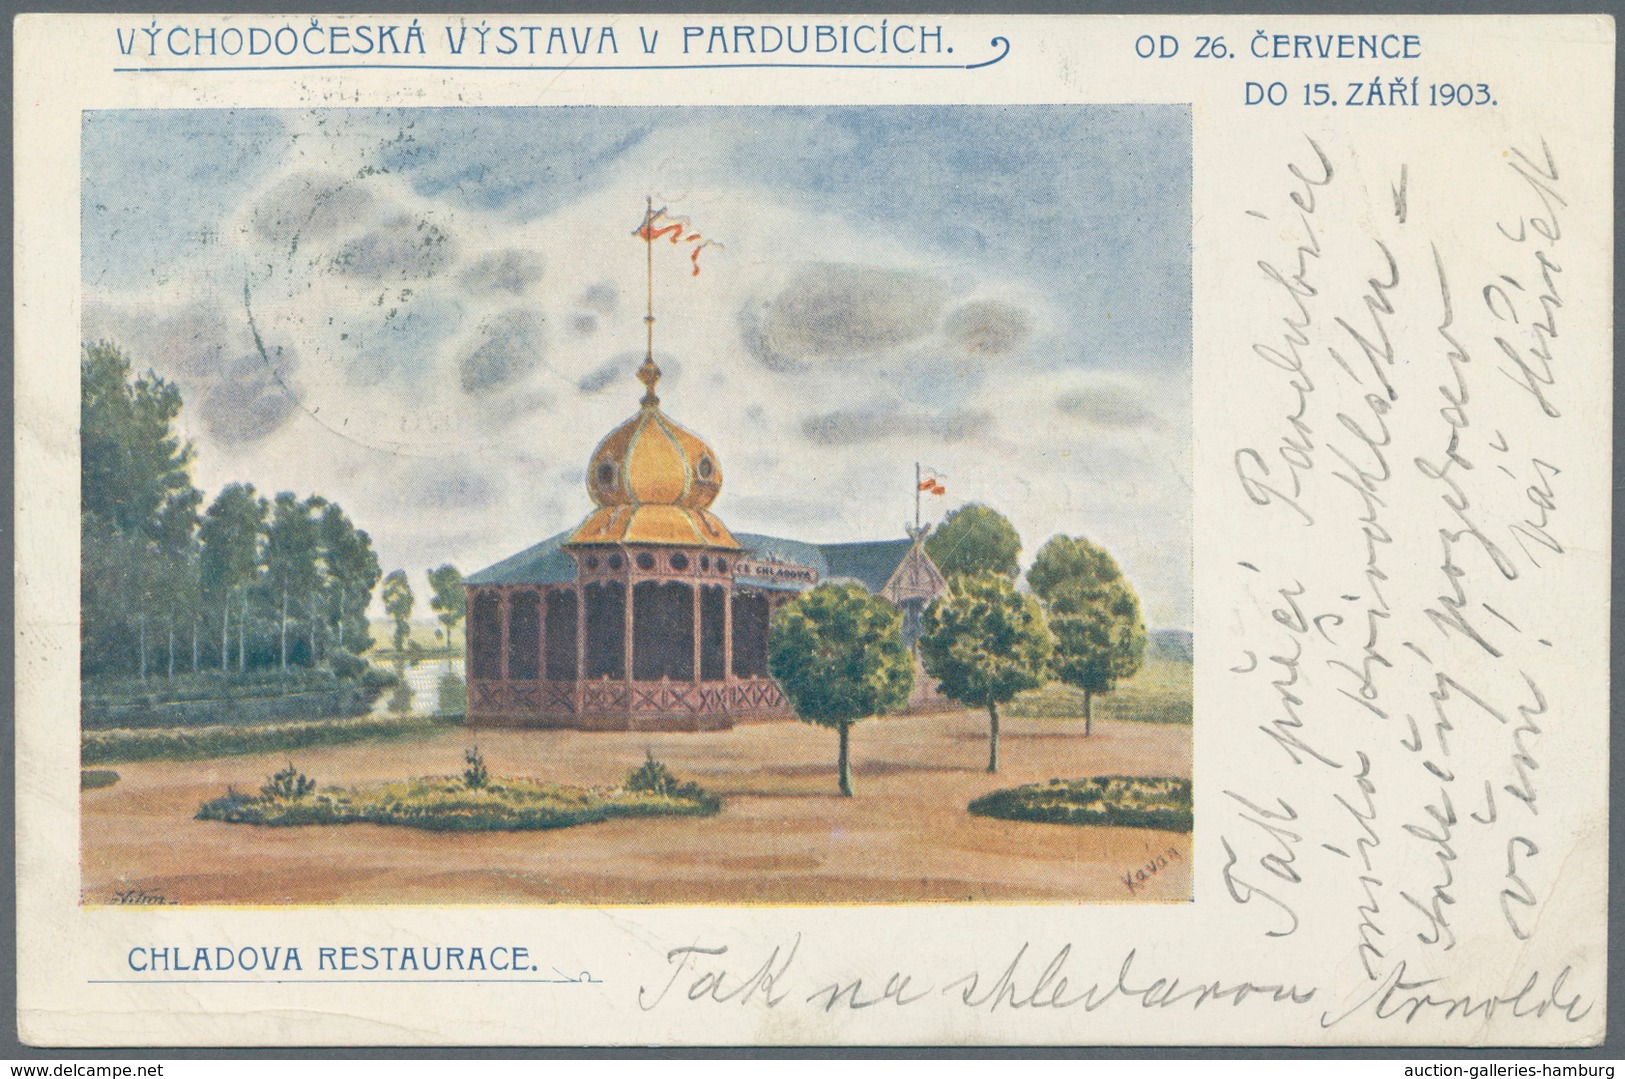 Österreich - Sonderstempel: 1903 (9. bis 15.8.), vier verschiedene Ausstellungskarten (Lesnicky Pavi